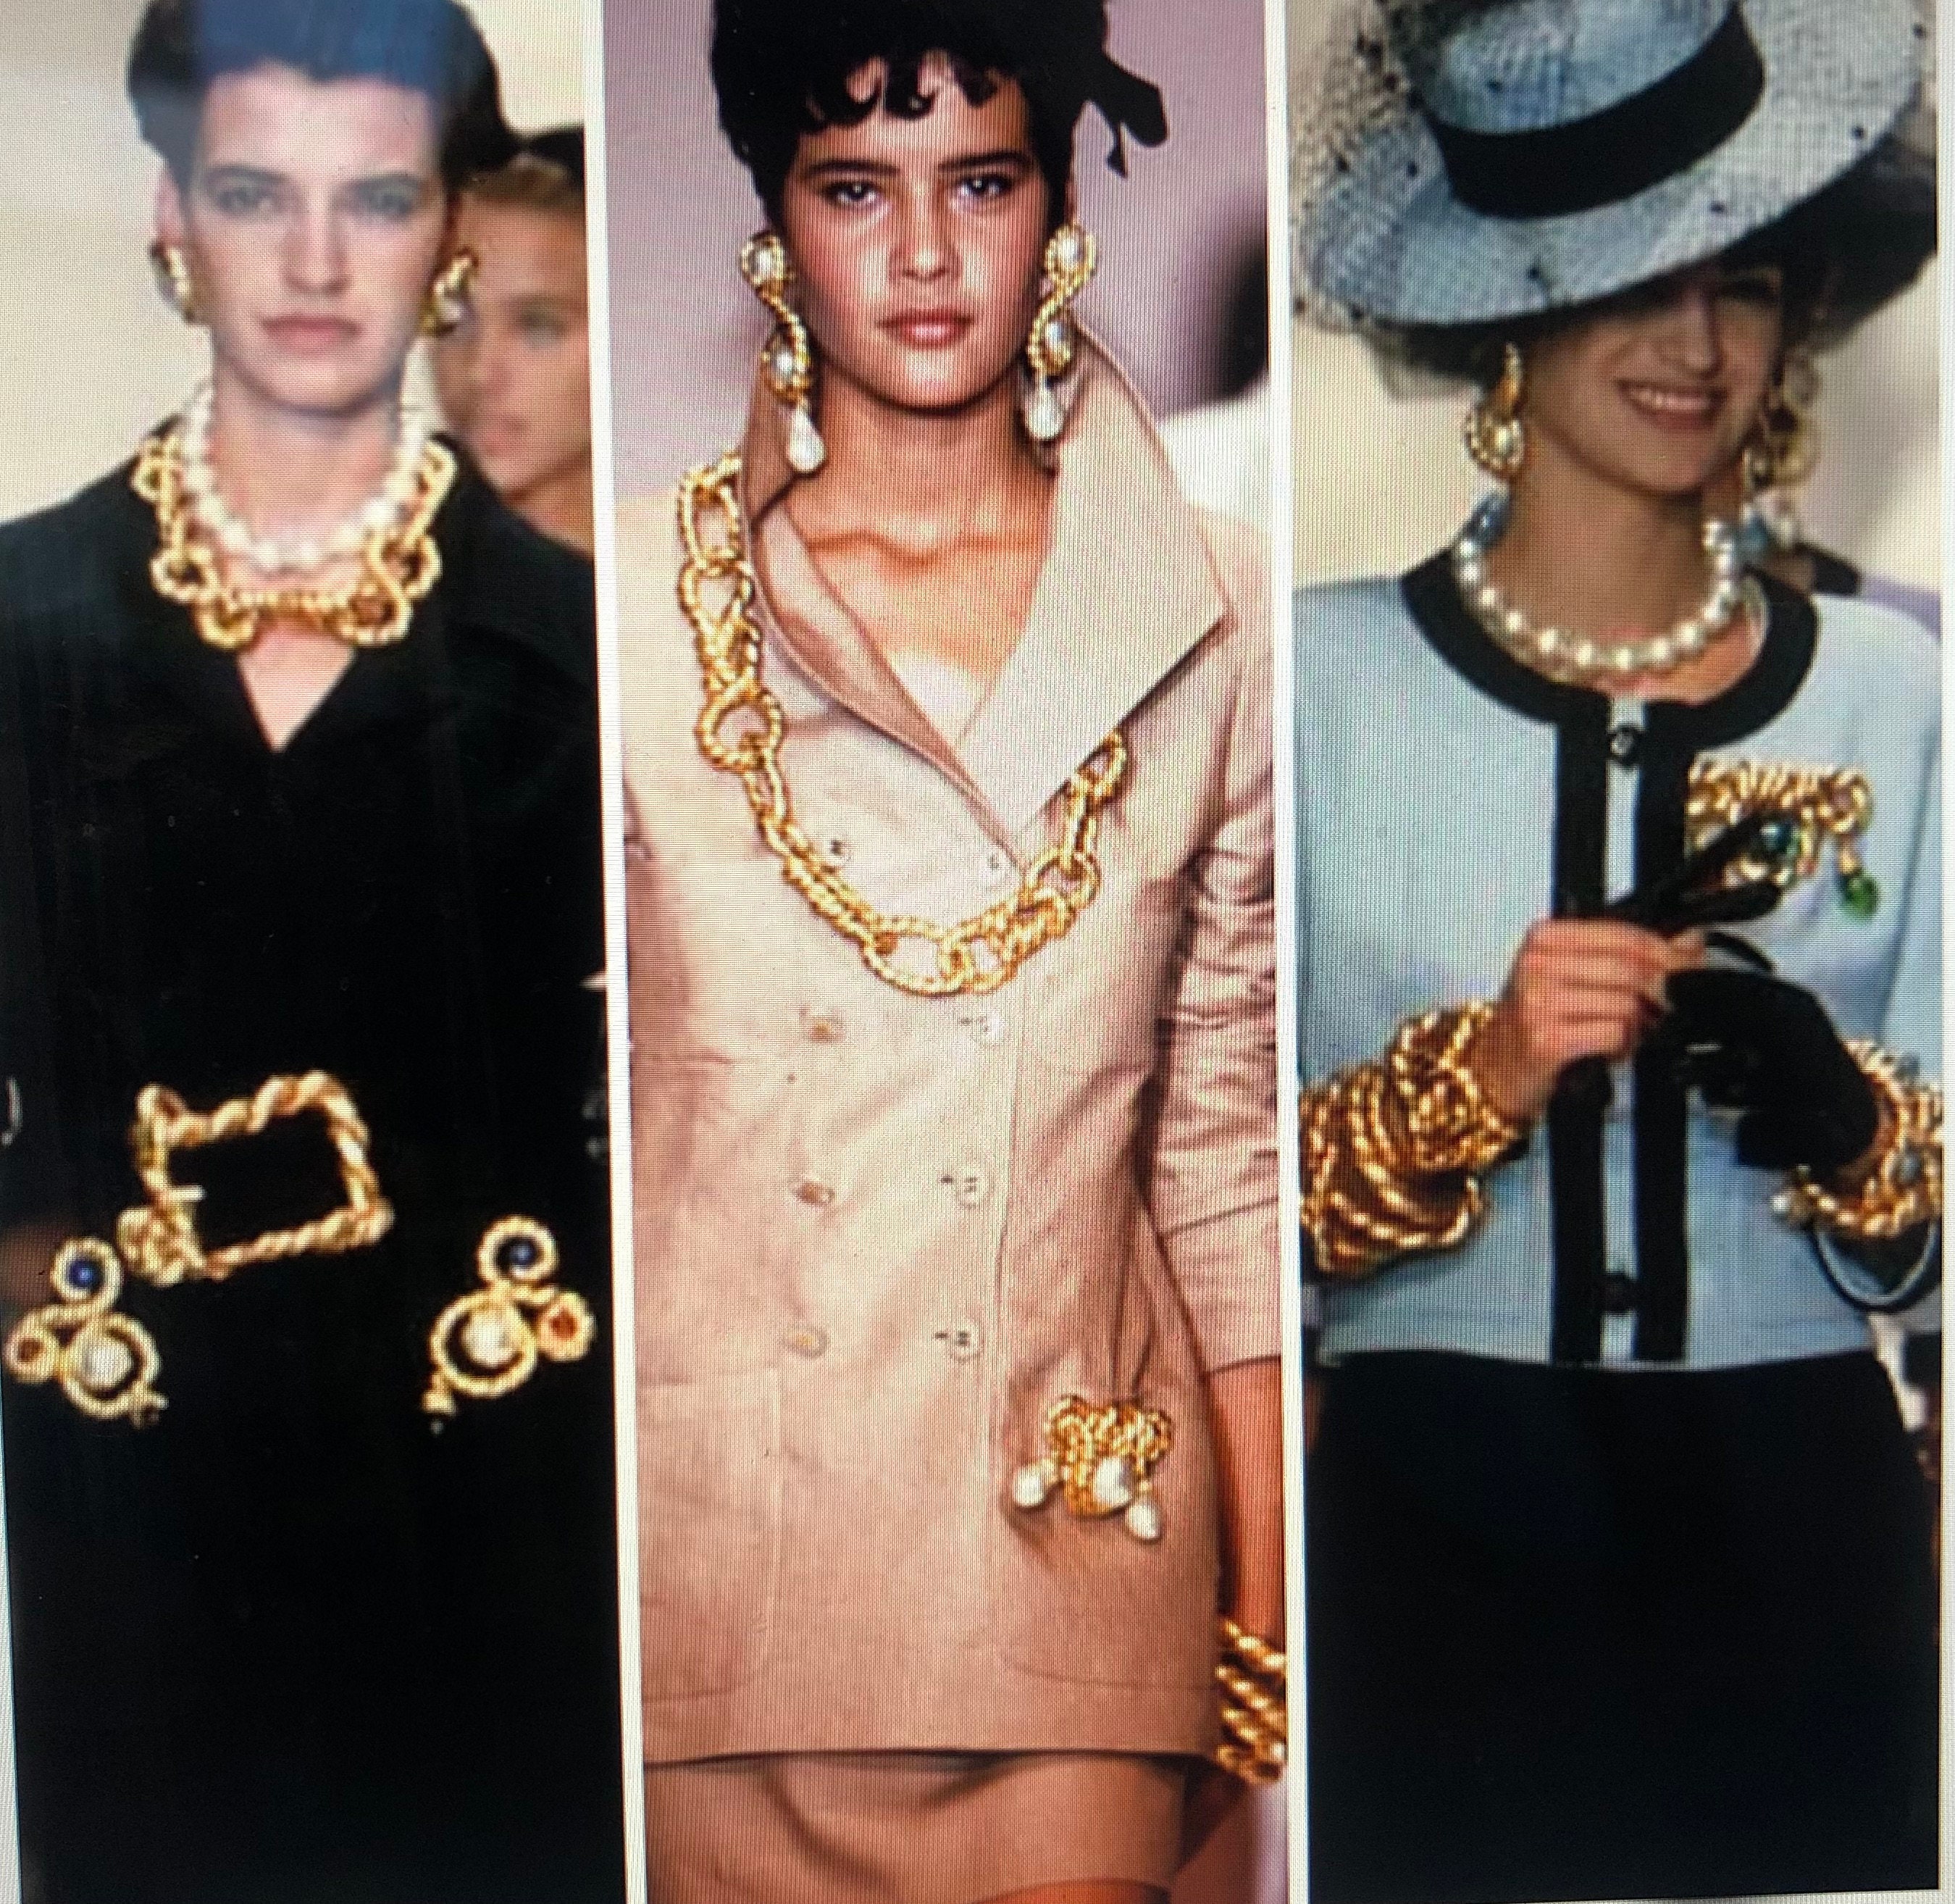 Chanel 1970's VINT/MINT gripoix pearl crystal dangle CLIP ON earrings